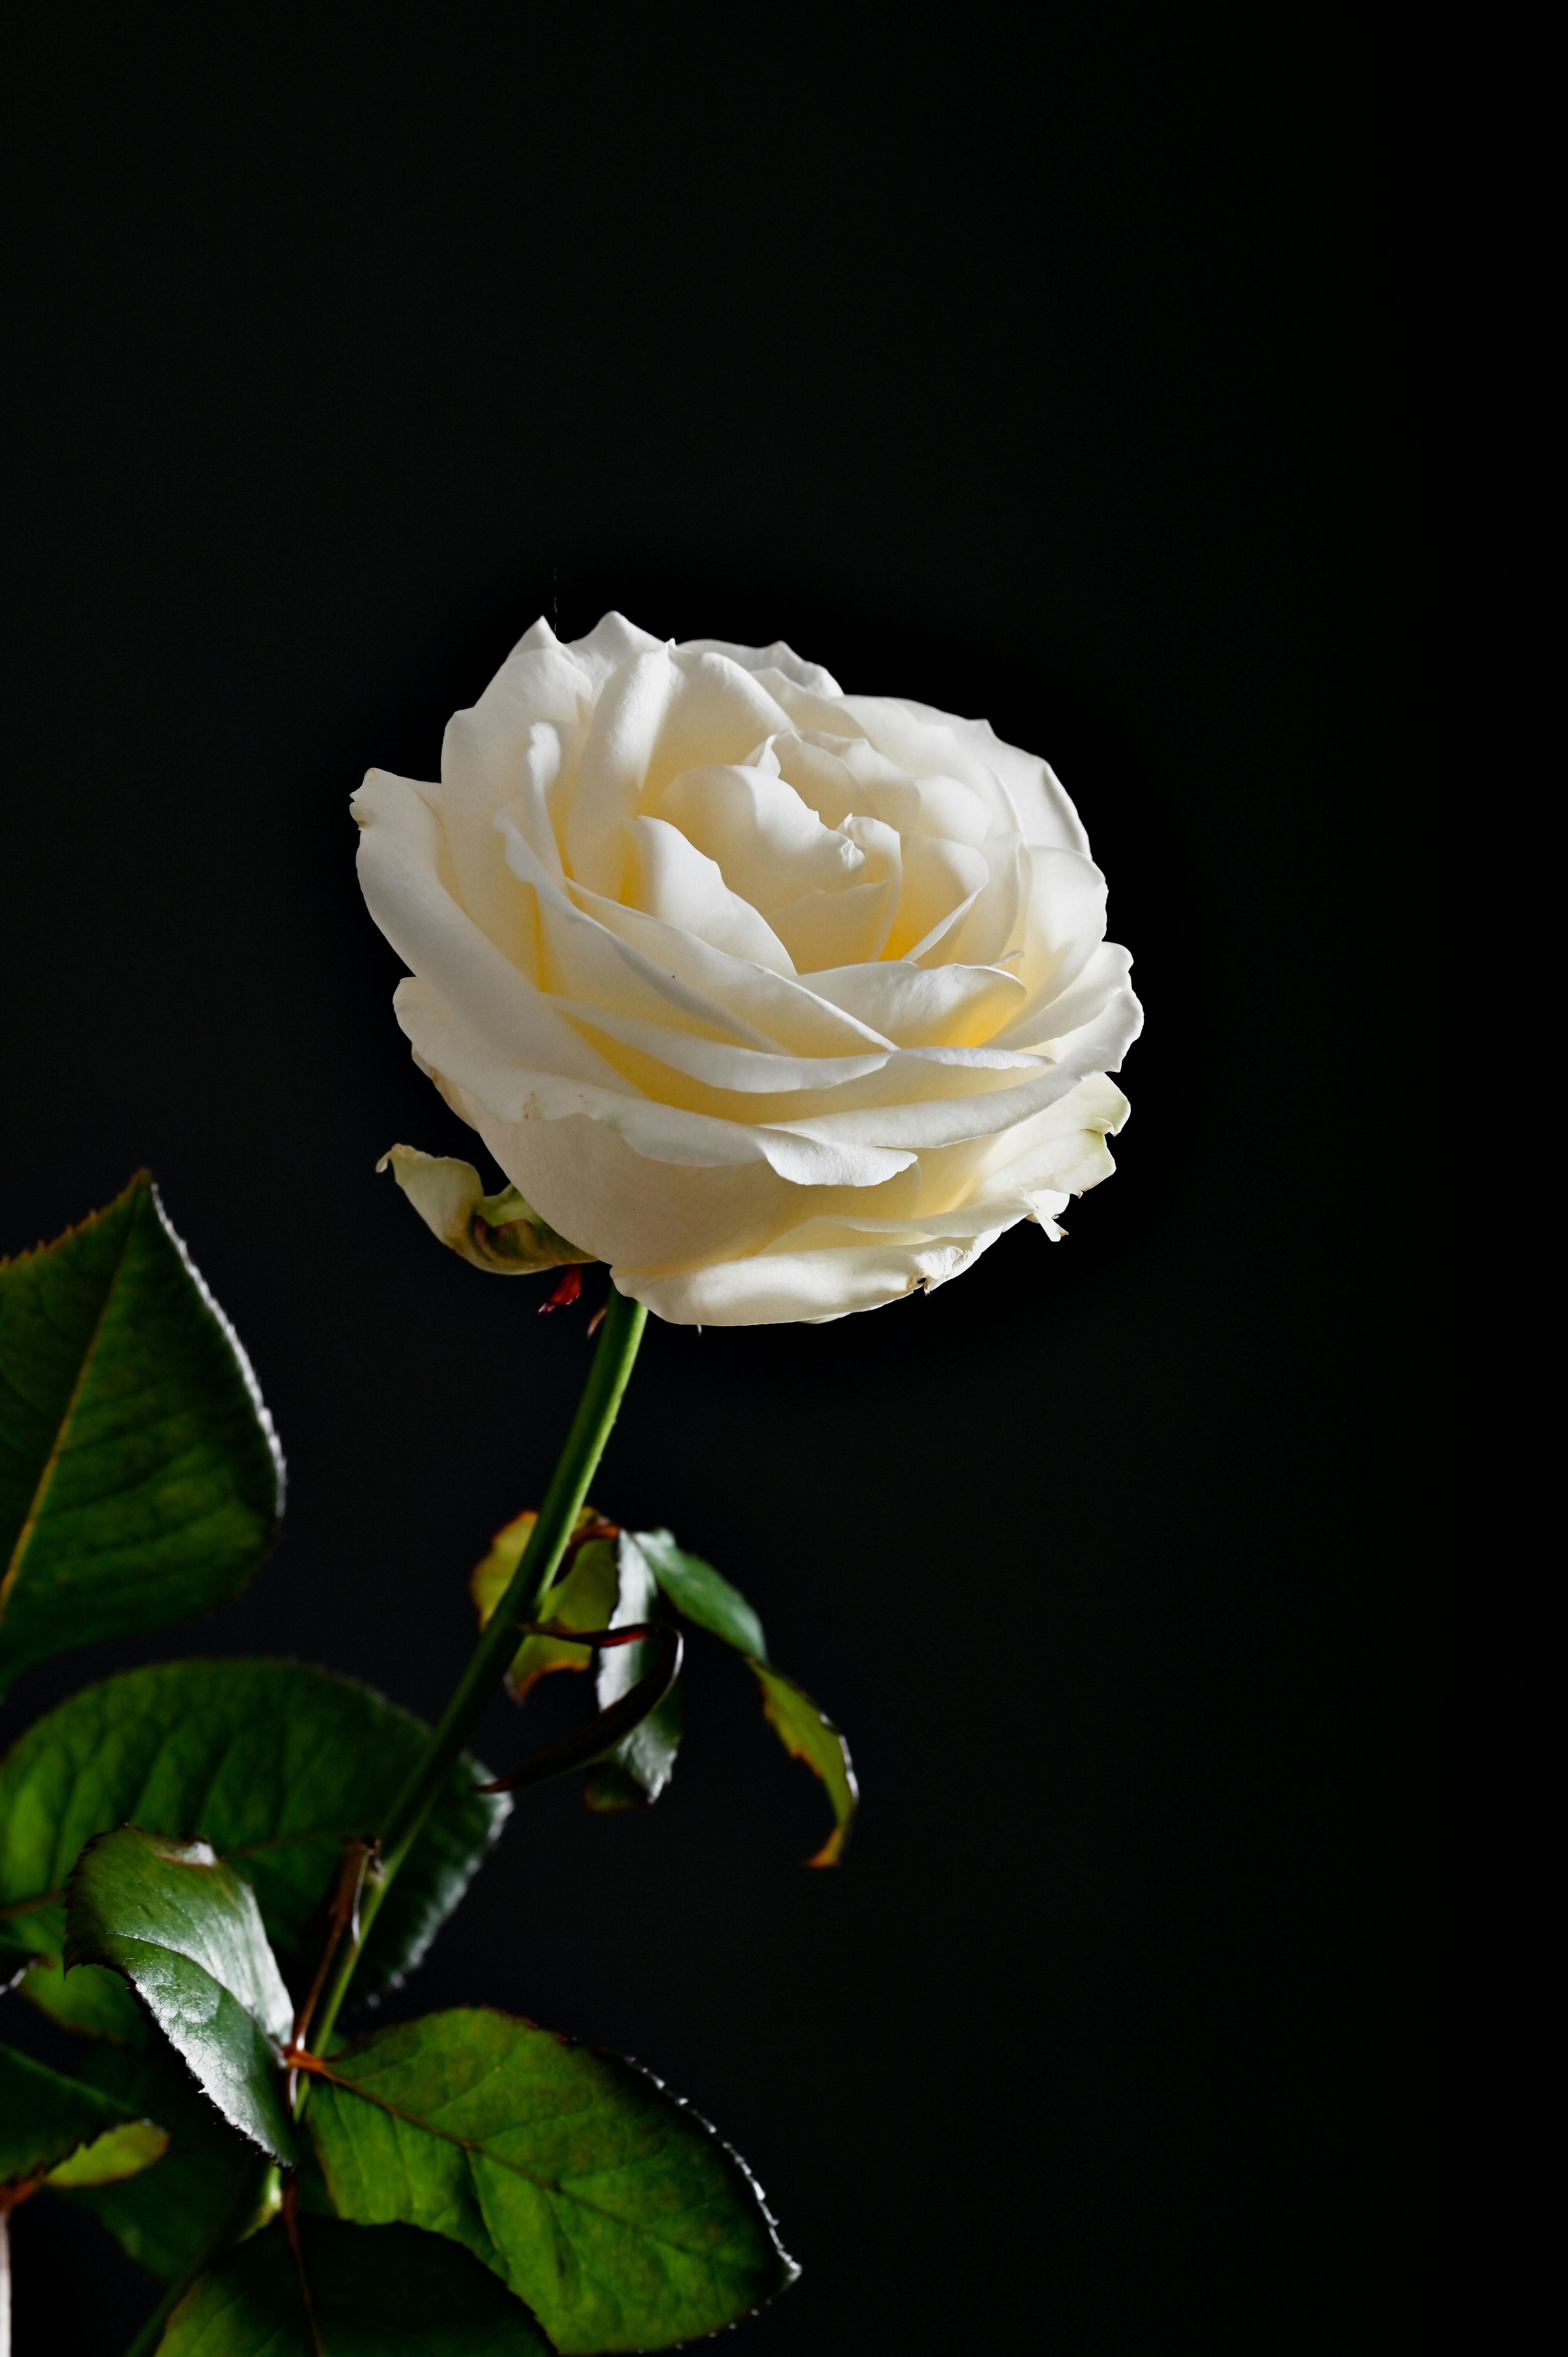 Hoa hồng trắng là biểu tượng của sự trong sáng và tinh khiết. Khi được đặt trên nền đen, cánh hoa hồng trắng của bạn sẽ trở nên như một bông tuyết thu nhỏ trong đêm tối. Hãy đón nhận vẻ đẹp ngọt ngào trên màn hình của bạn.